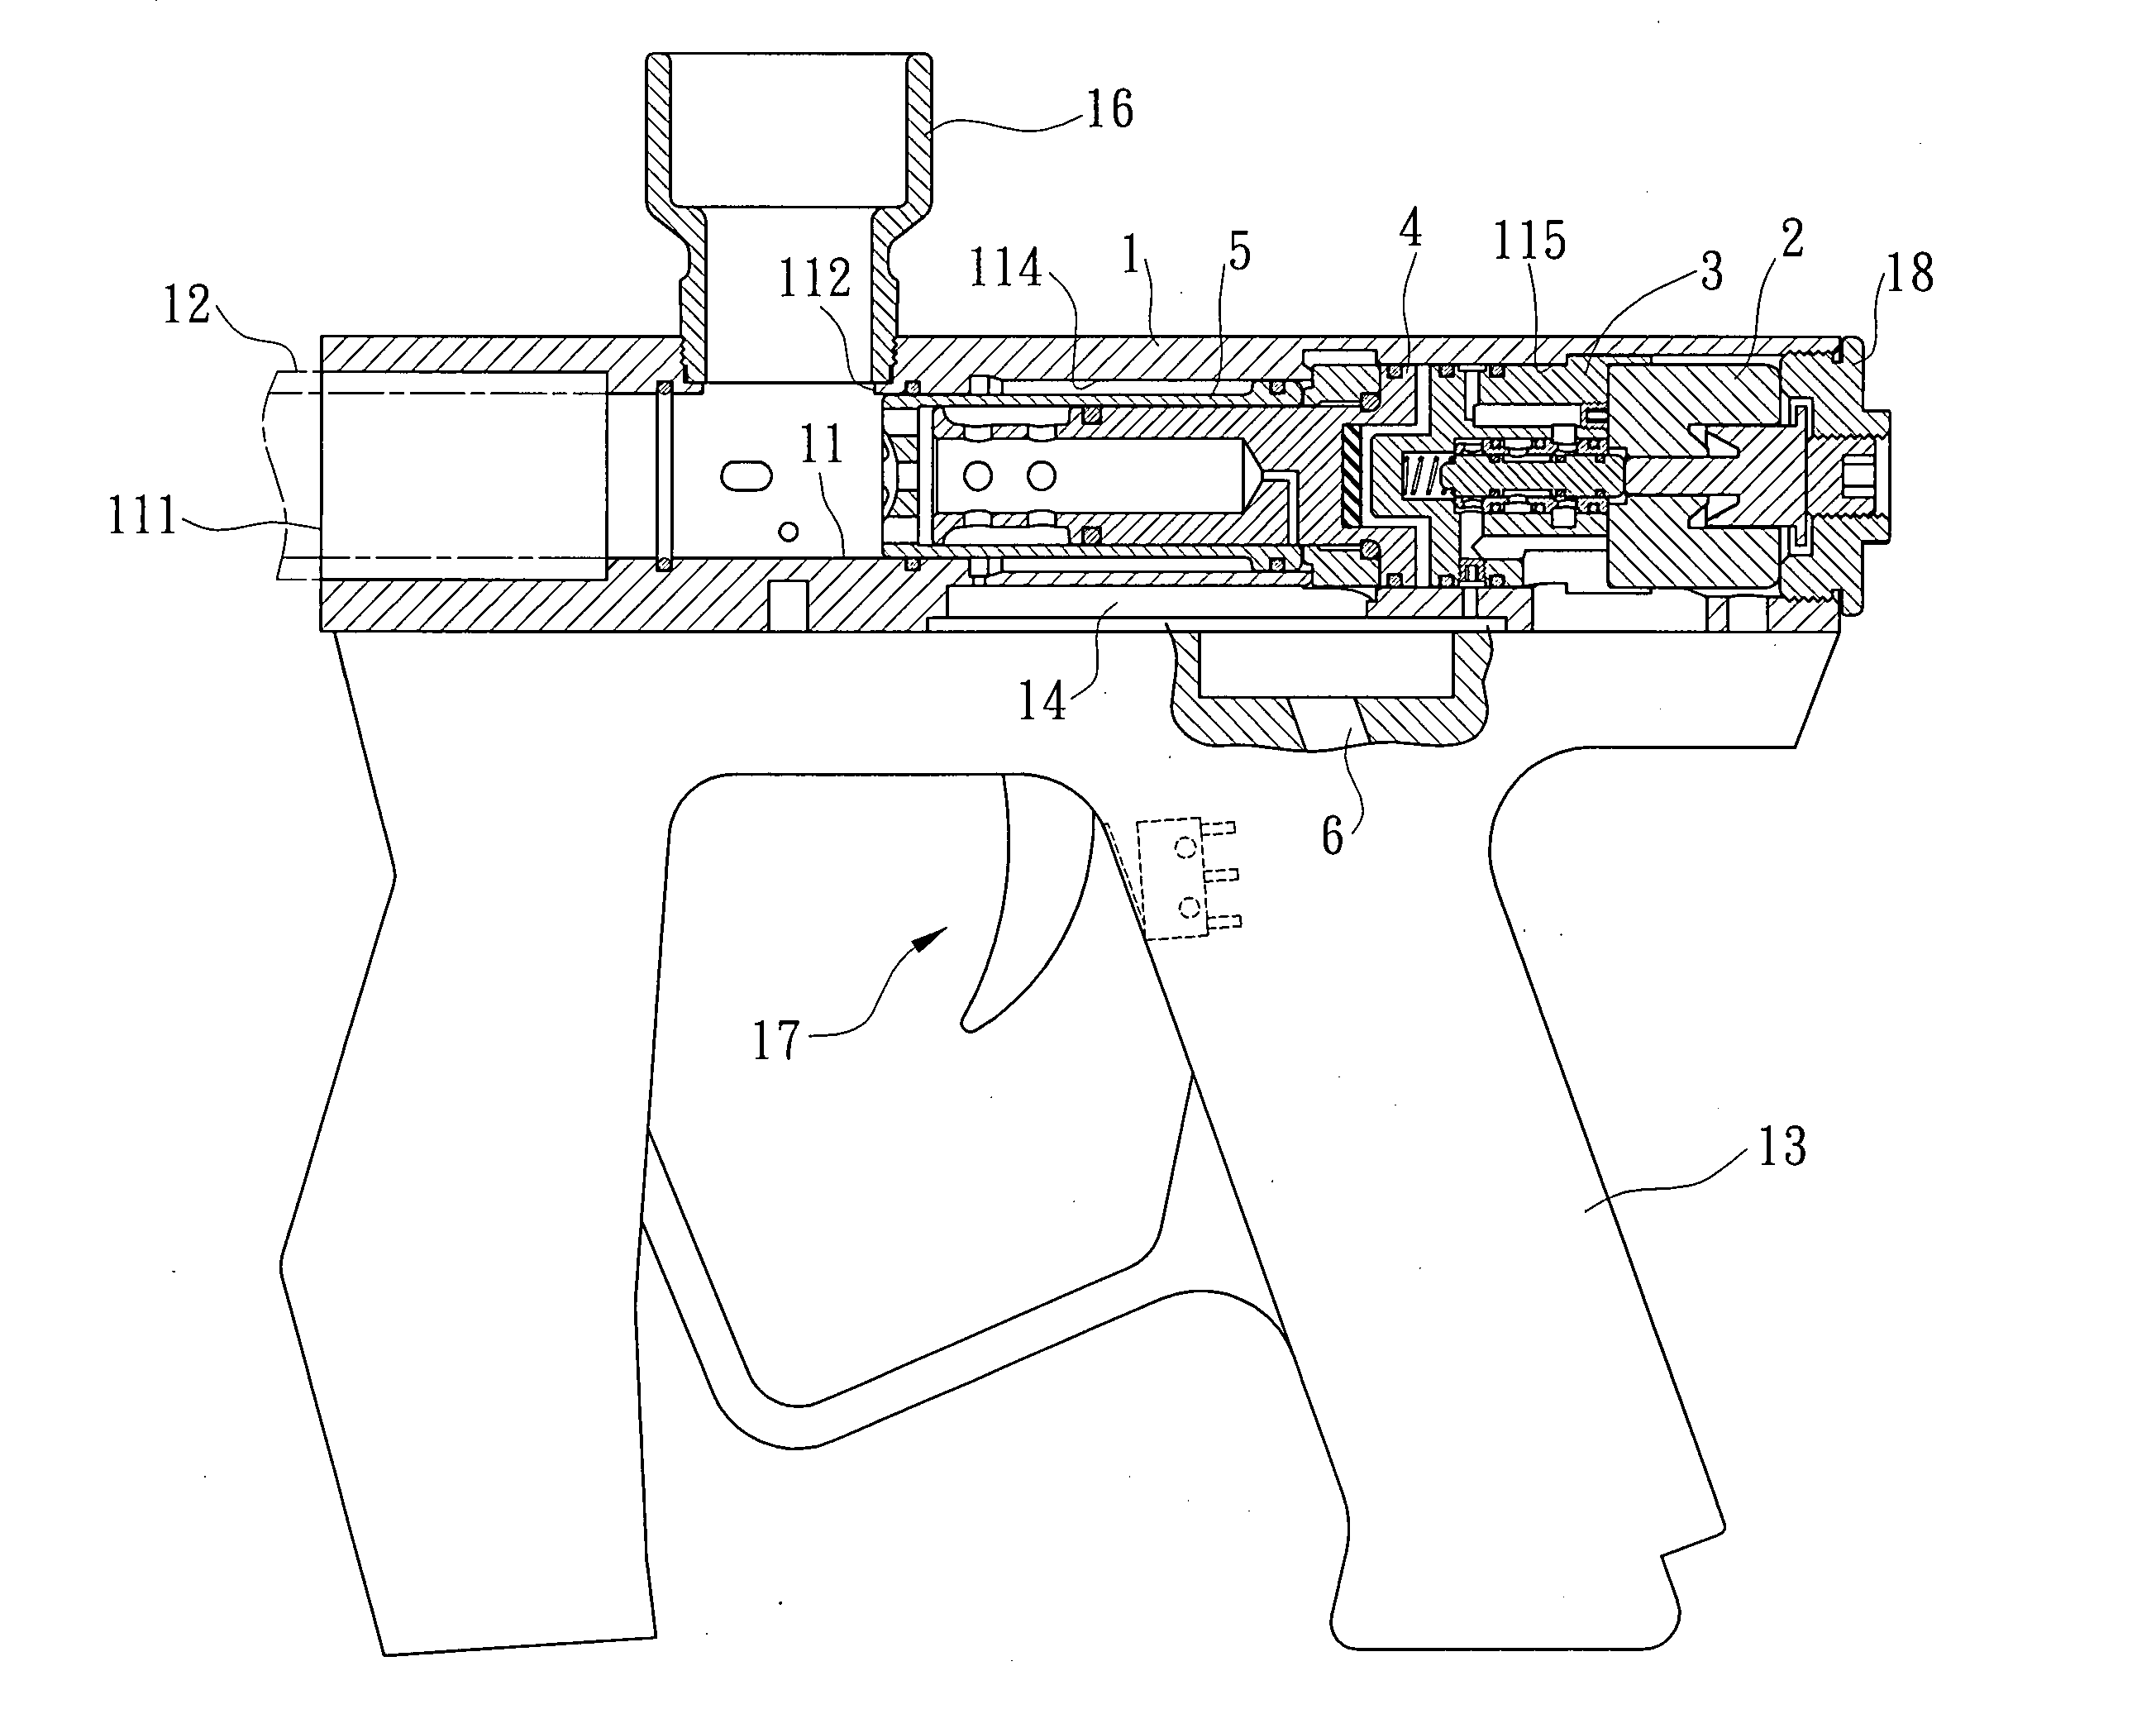 Firing mechanism for paintball gun